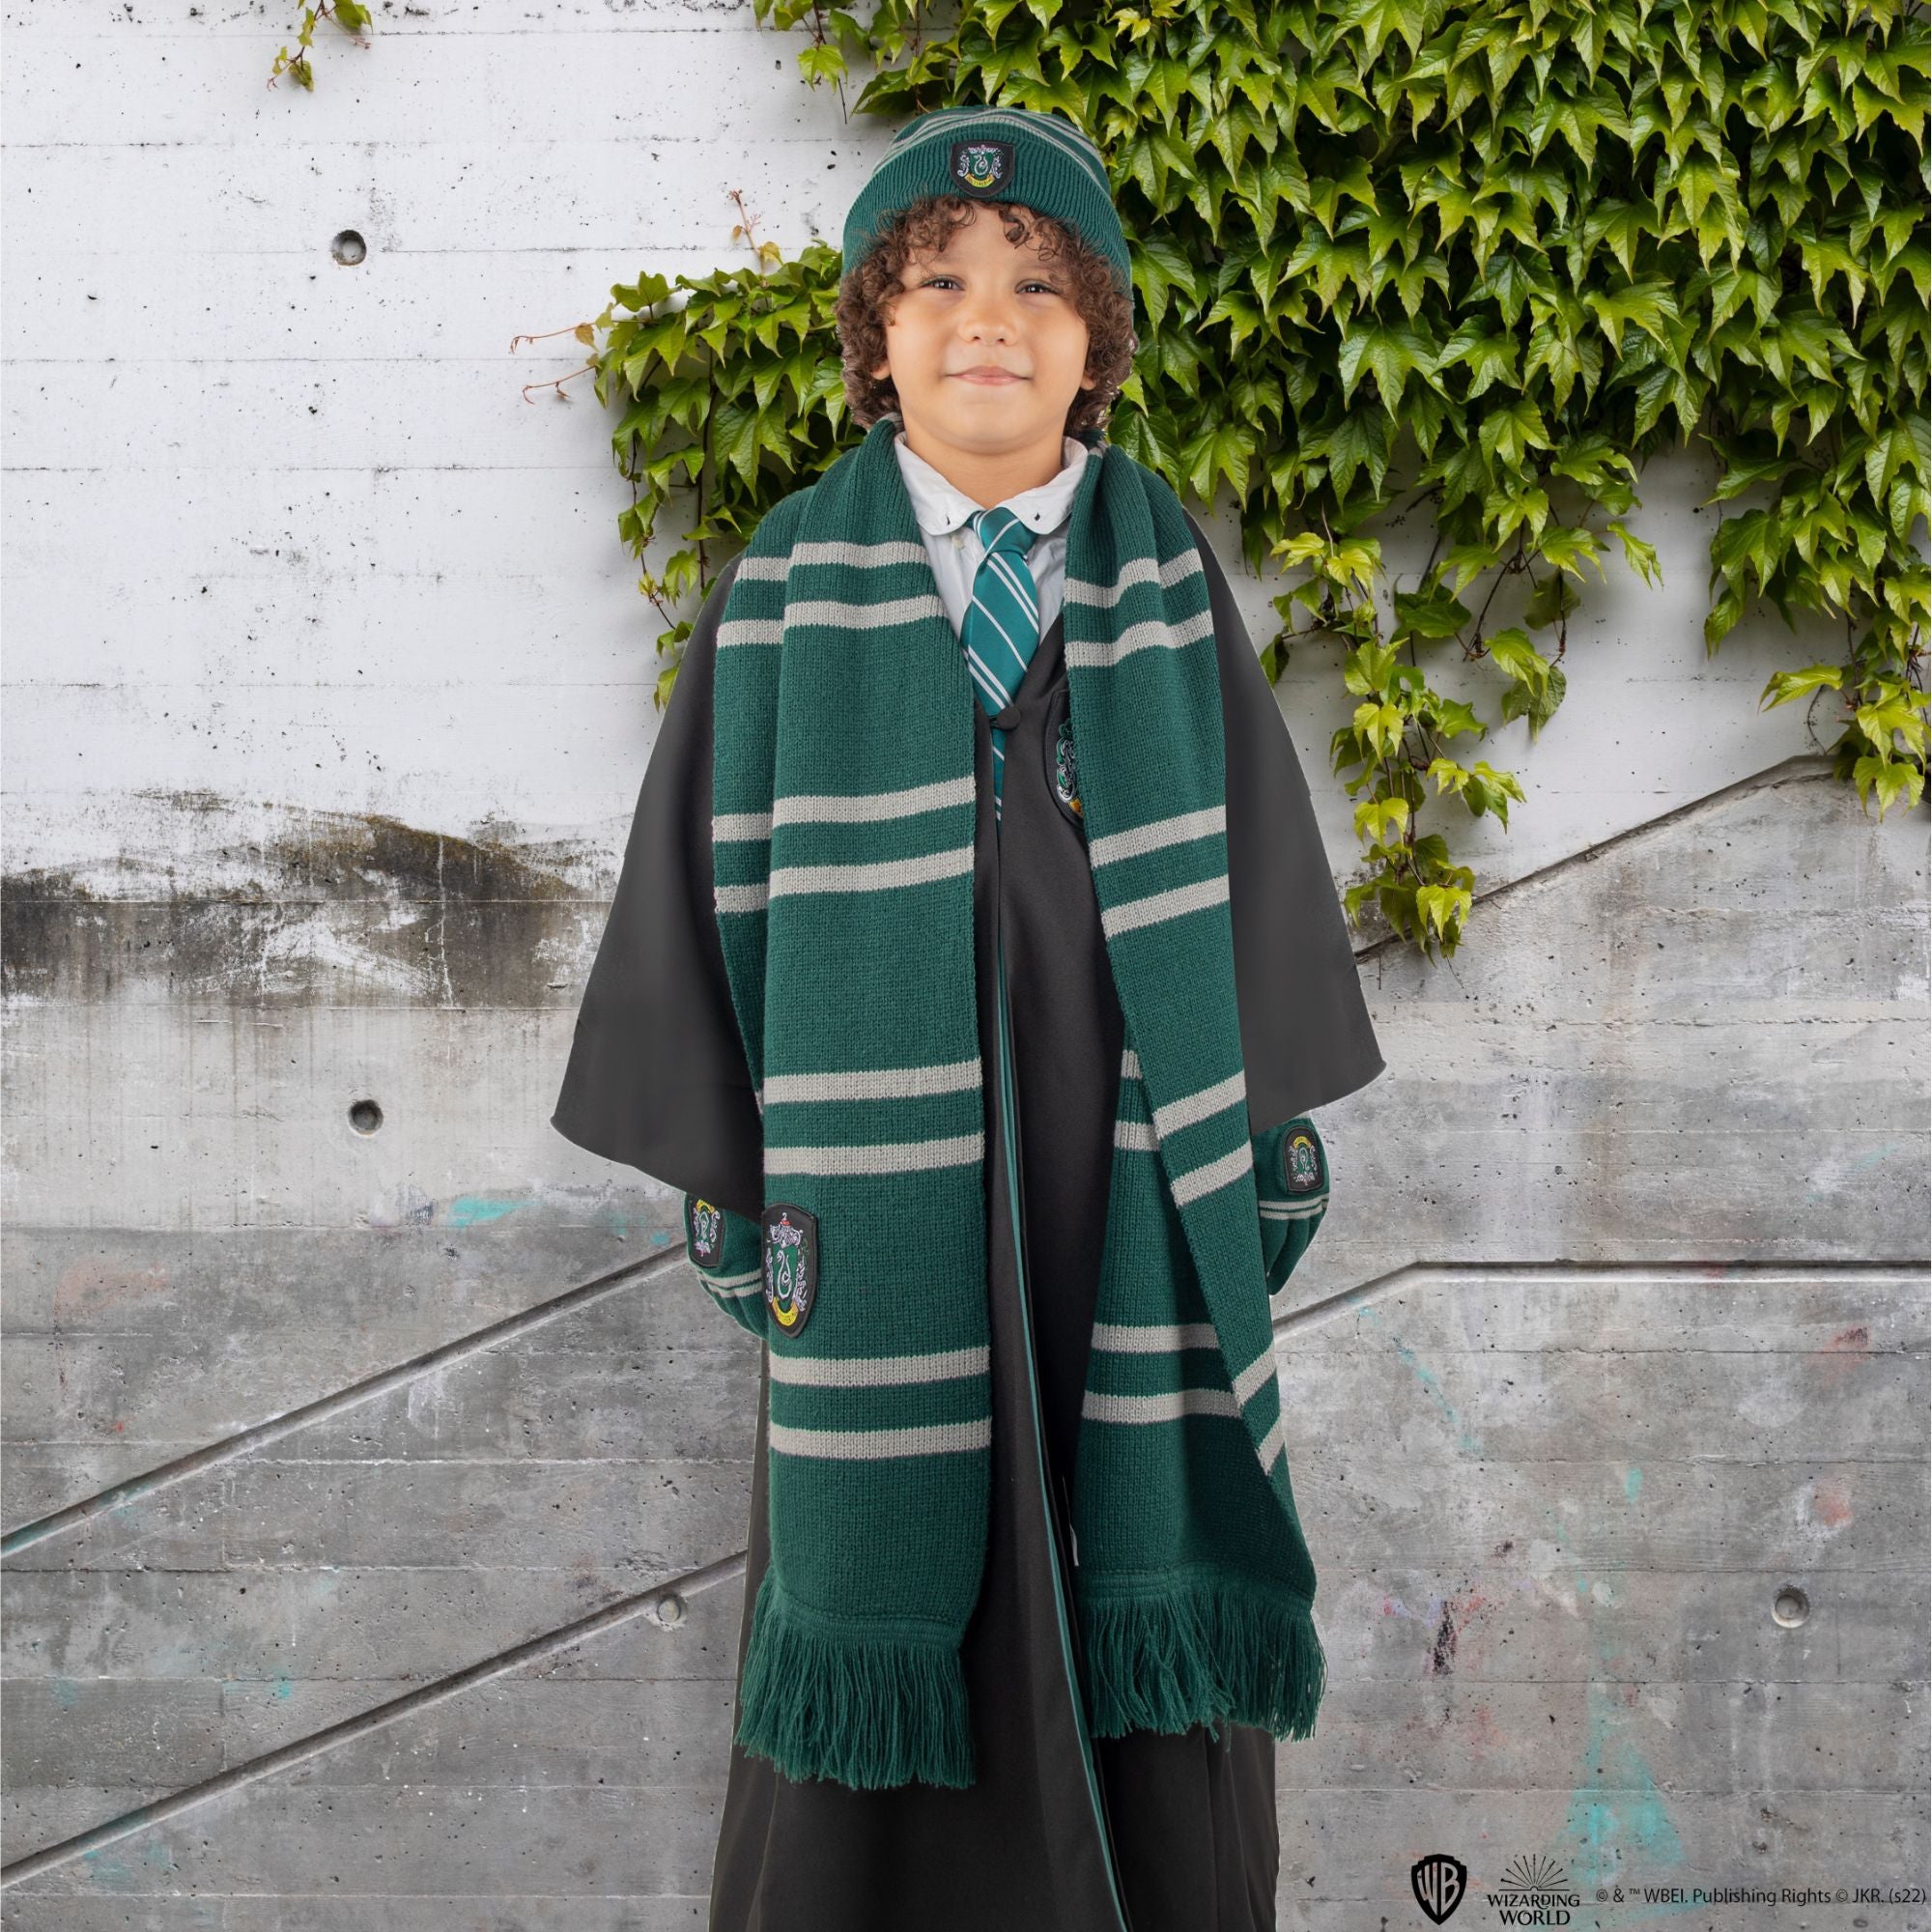 Robe Serpentard - Déguisement Harry Potter Adulte sur  en achat ou  location sur Paris